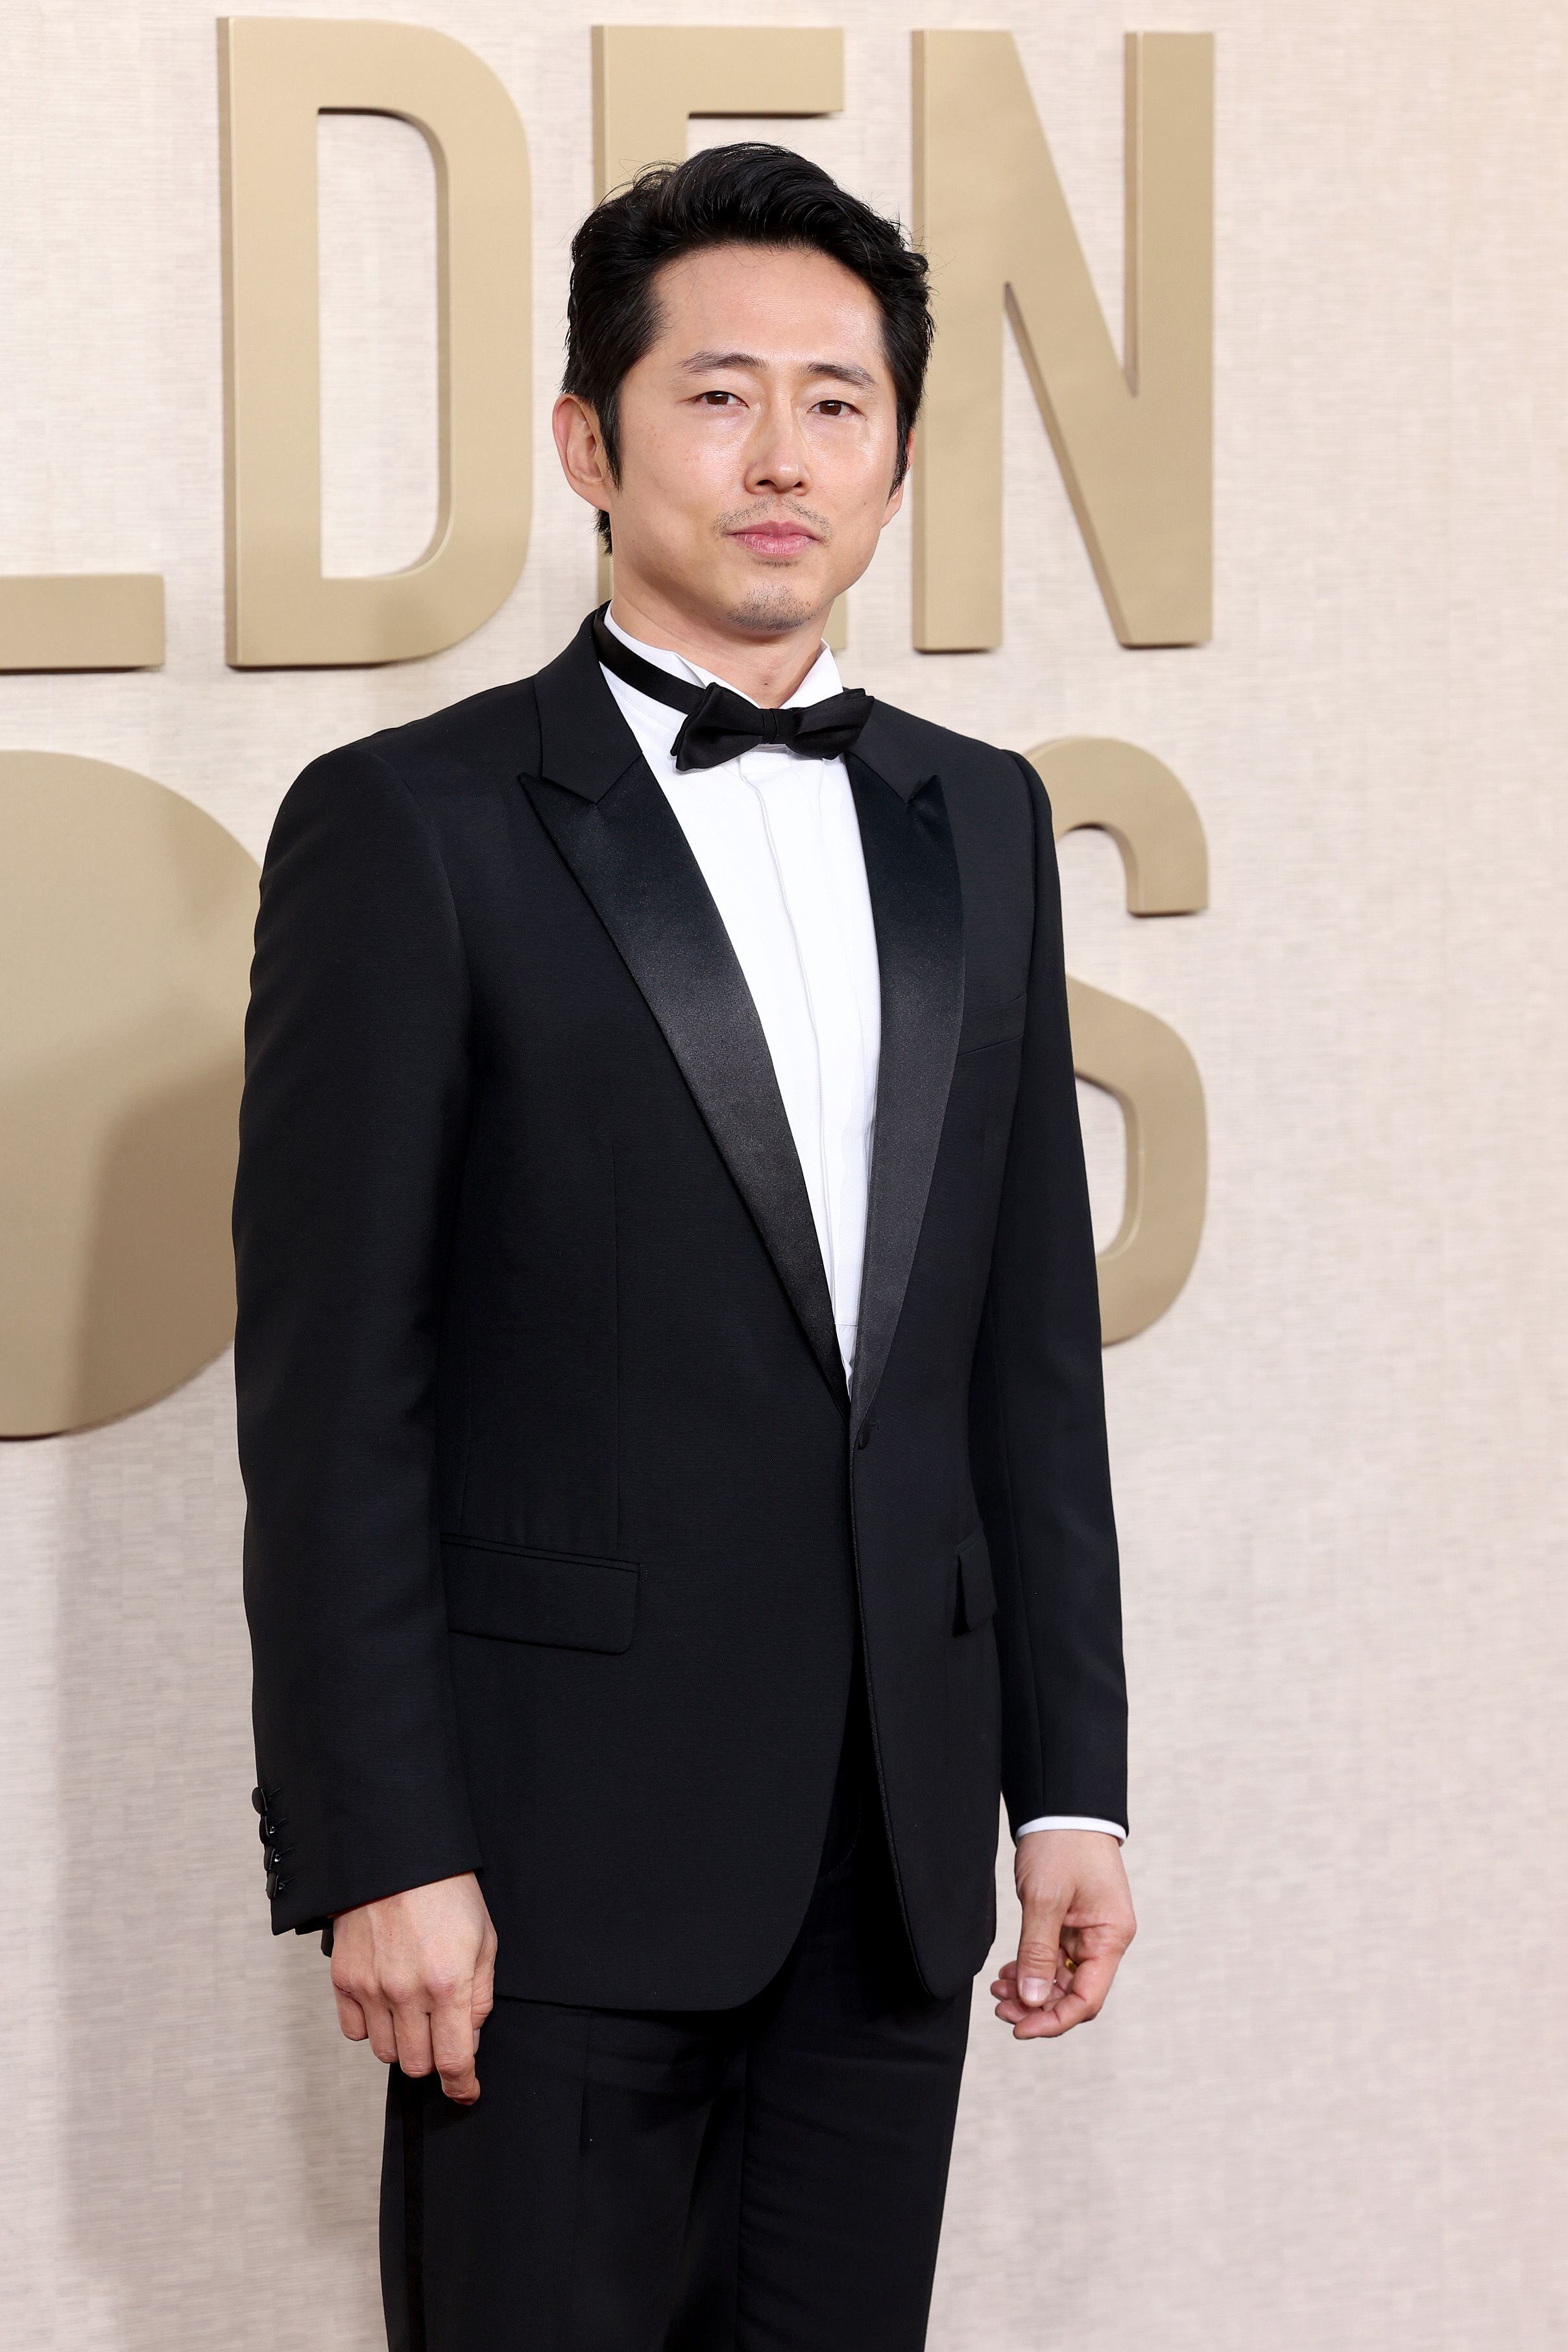 Steven Yeun acudía nominado por primera vez y se marchaba con un Globo de Oro a mejor actor en una miniserie o película para televisión por 'Bronca'.